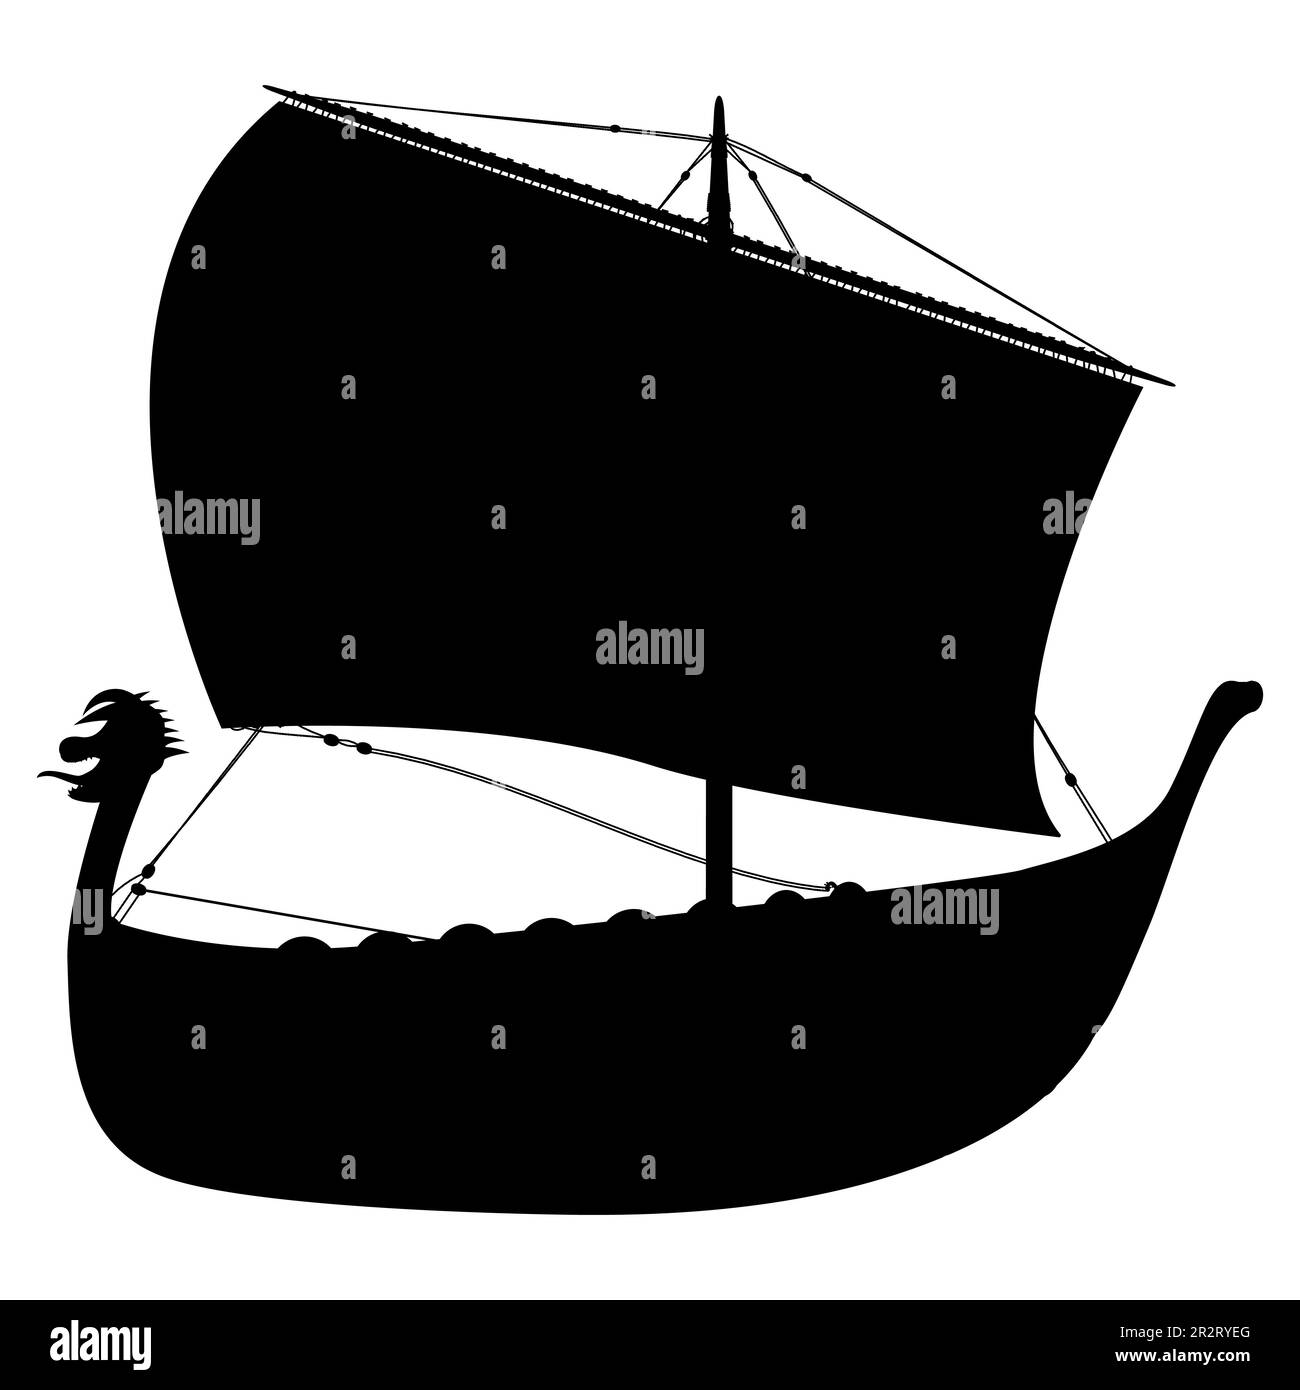 Vichingo scandinavo drakar silhouette. Nave Norman a vela. Illustrazione vettoriale isolata su sfondo bianco. Illustrazione Vettoriale